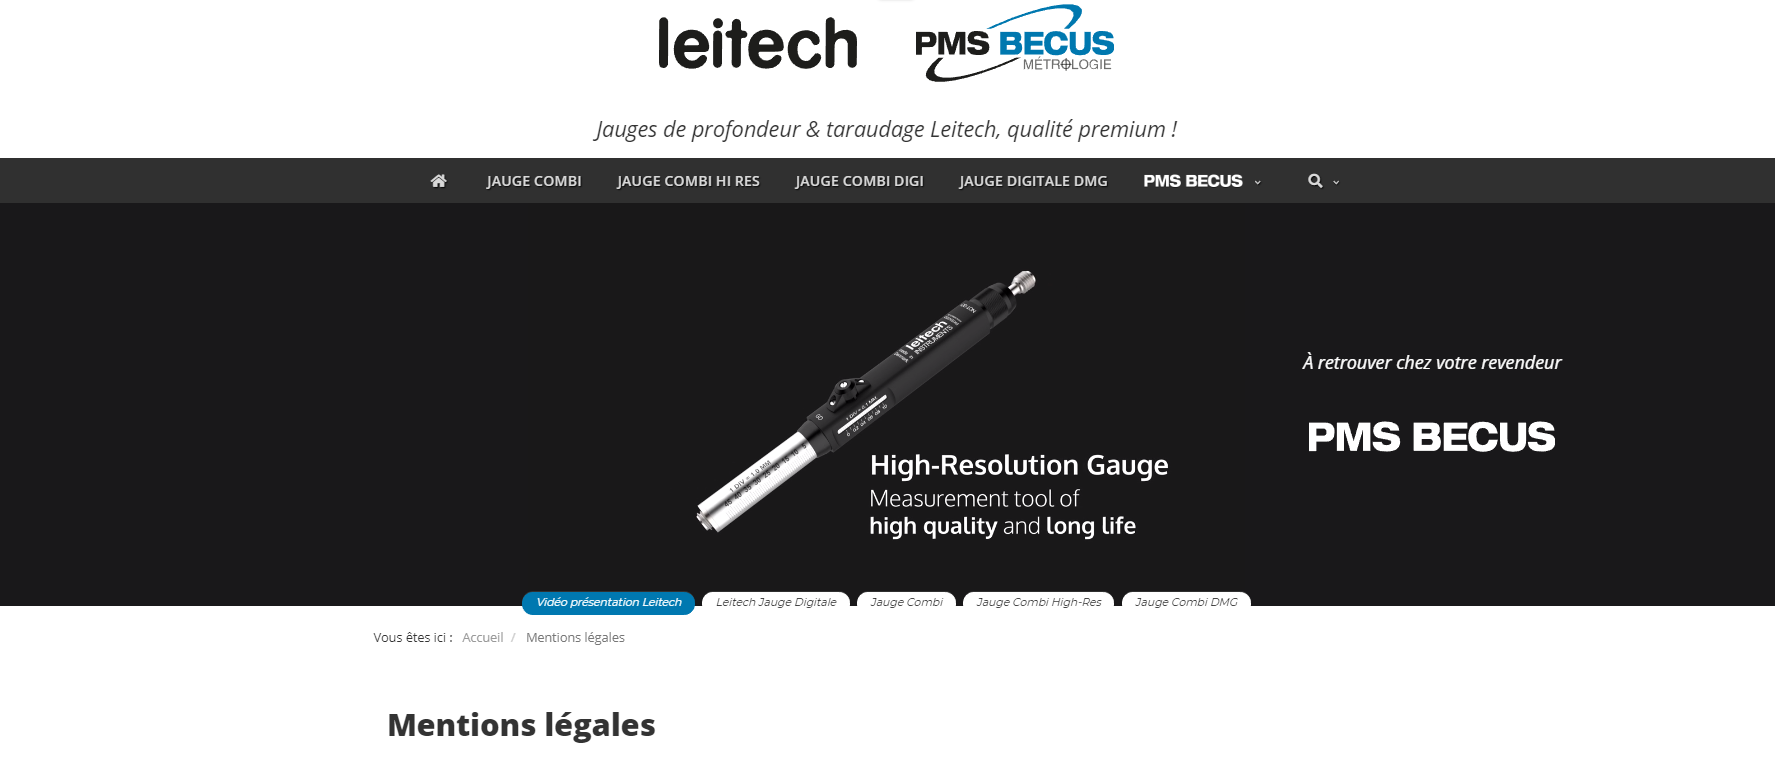 Leitech France : Mentions Légales